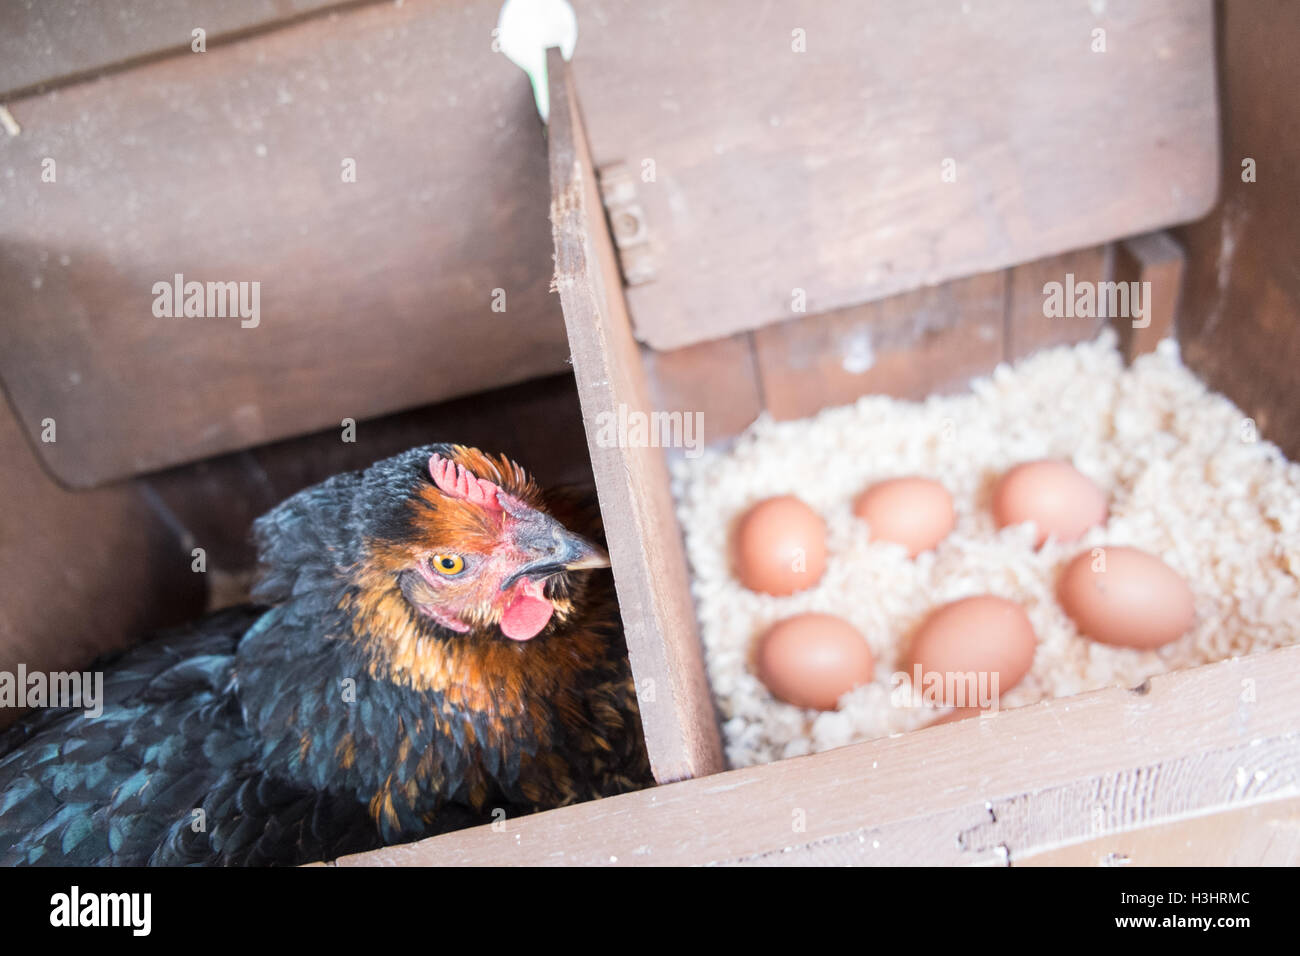 Meine Hühner in ihrem Nistkasten vor kurzem legte Eier in meinem kleinen Garten für meinen persönlichen Gebrauch, Verbrauch, in ländlichen Dorf, West, Wales. Stockfoto